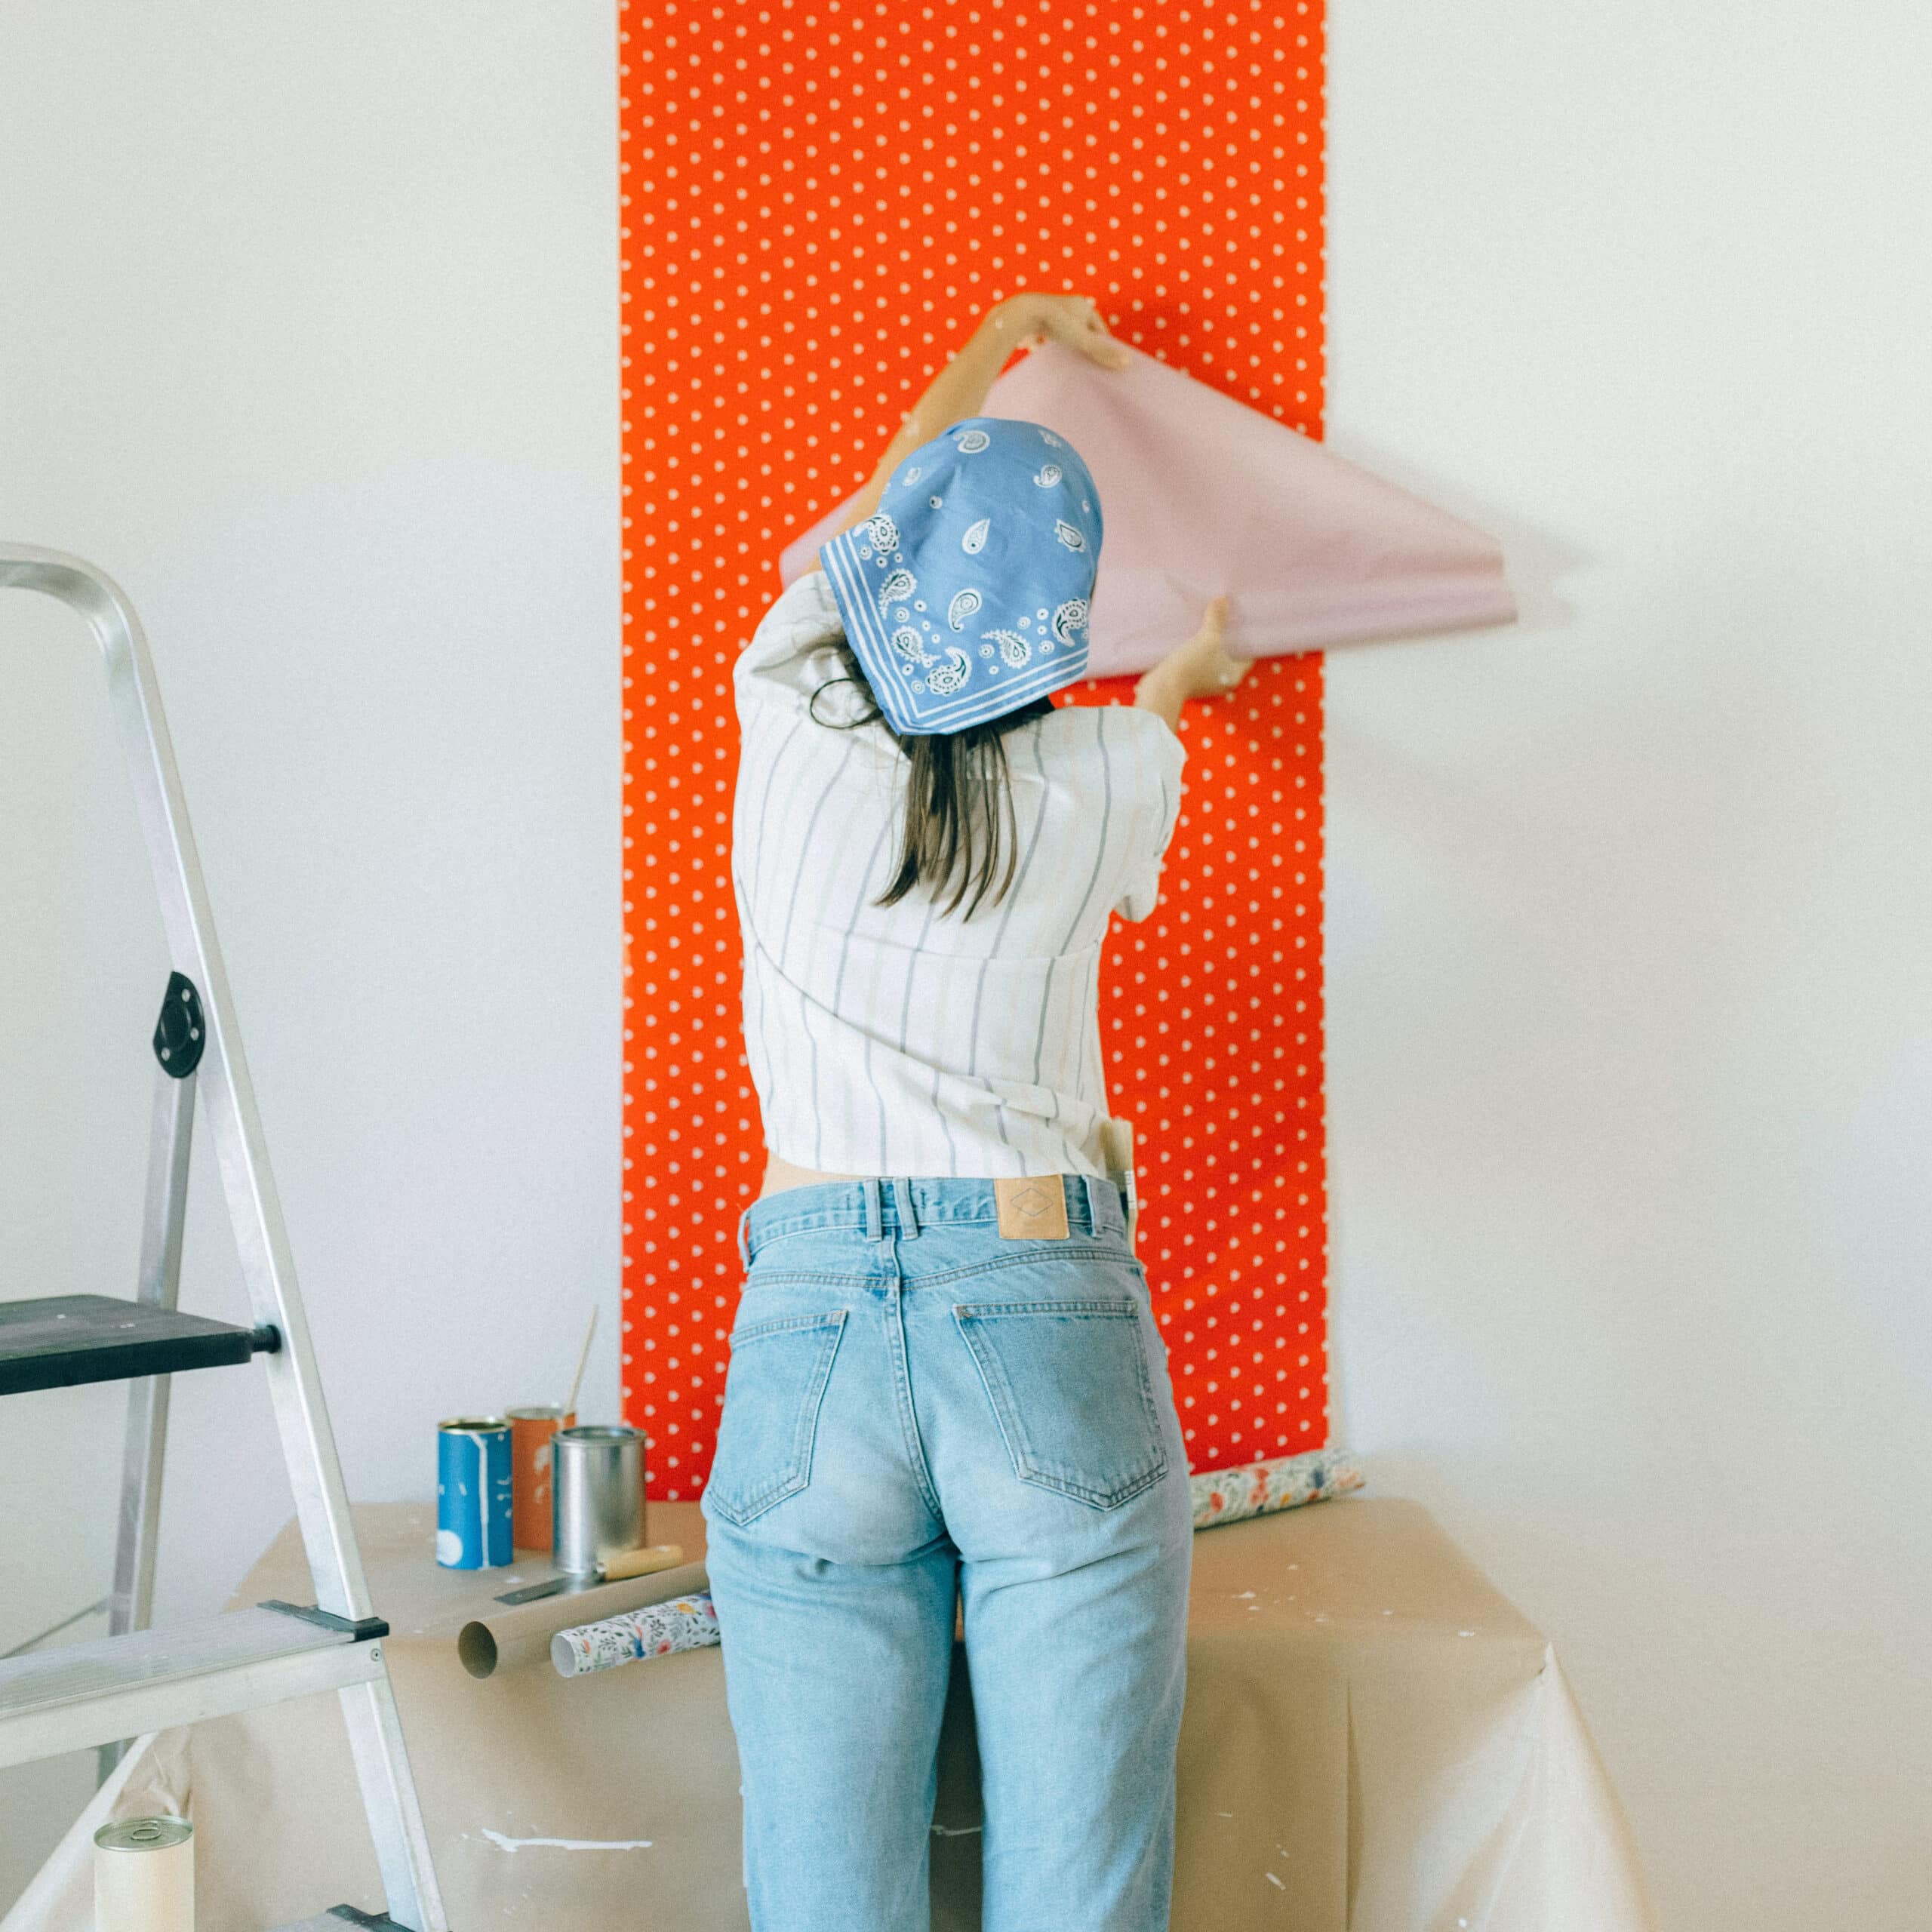 Rénover une maison soi-même - Une femme en train de poser du papier peint